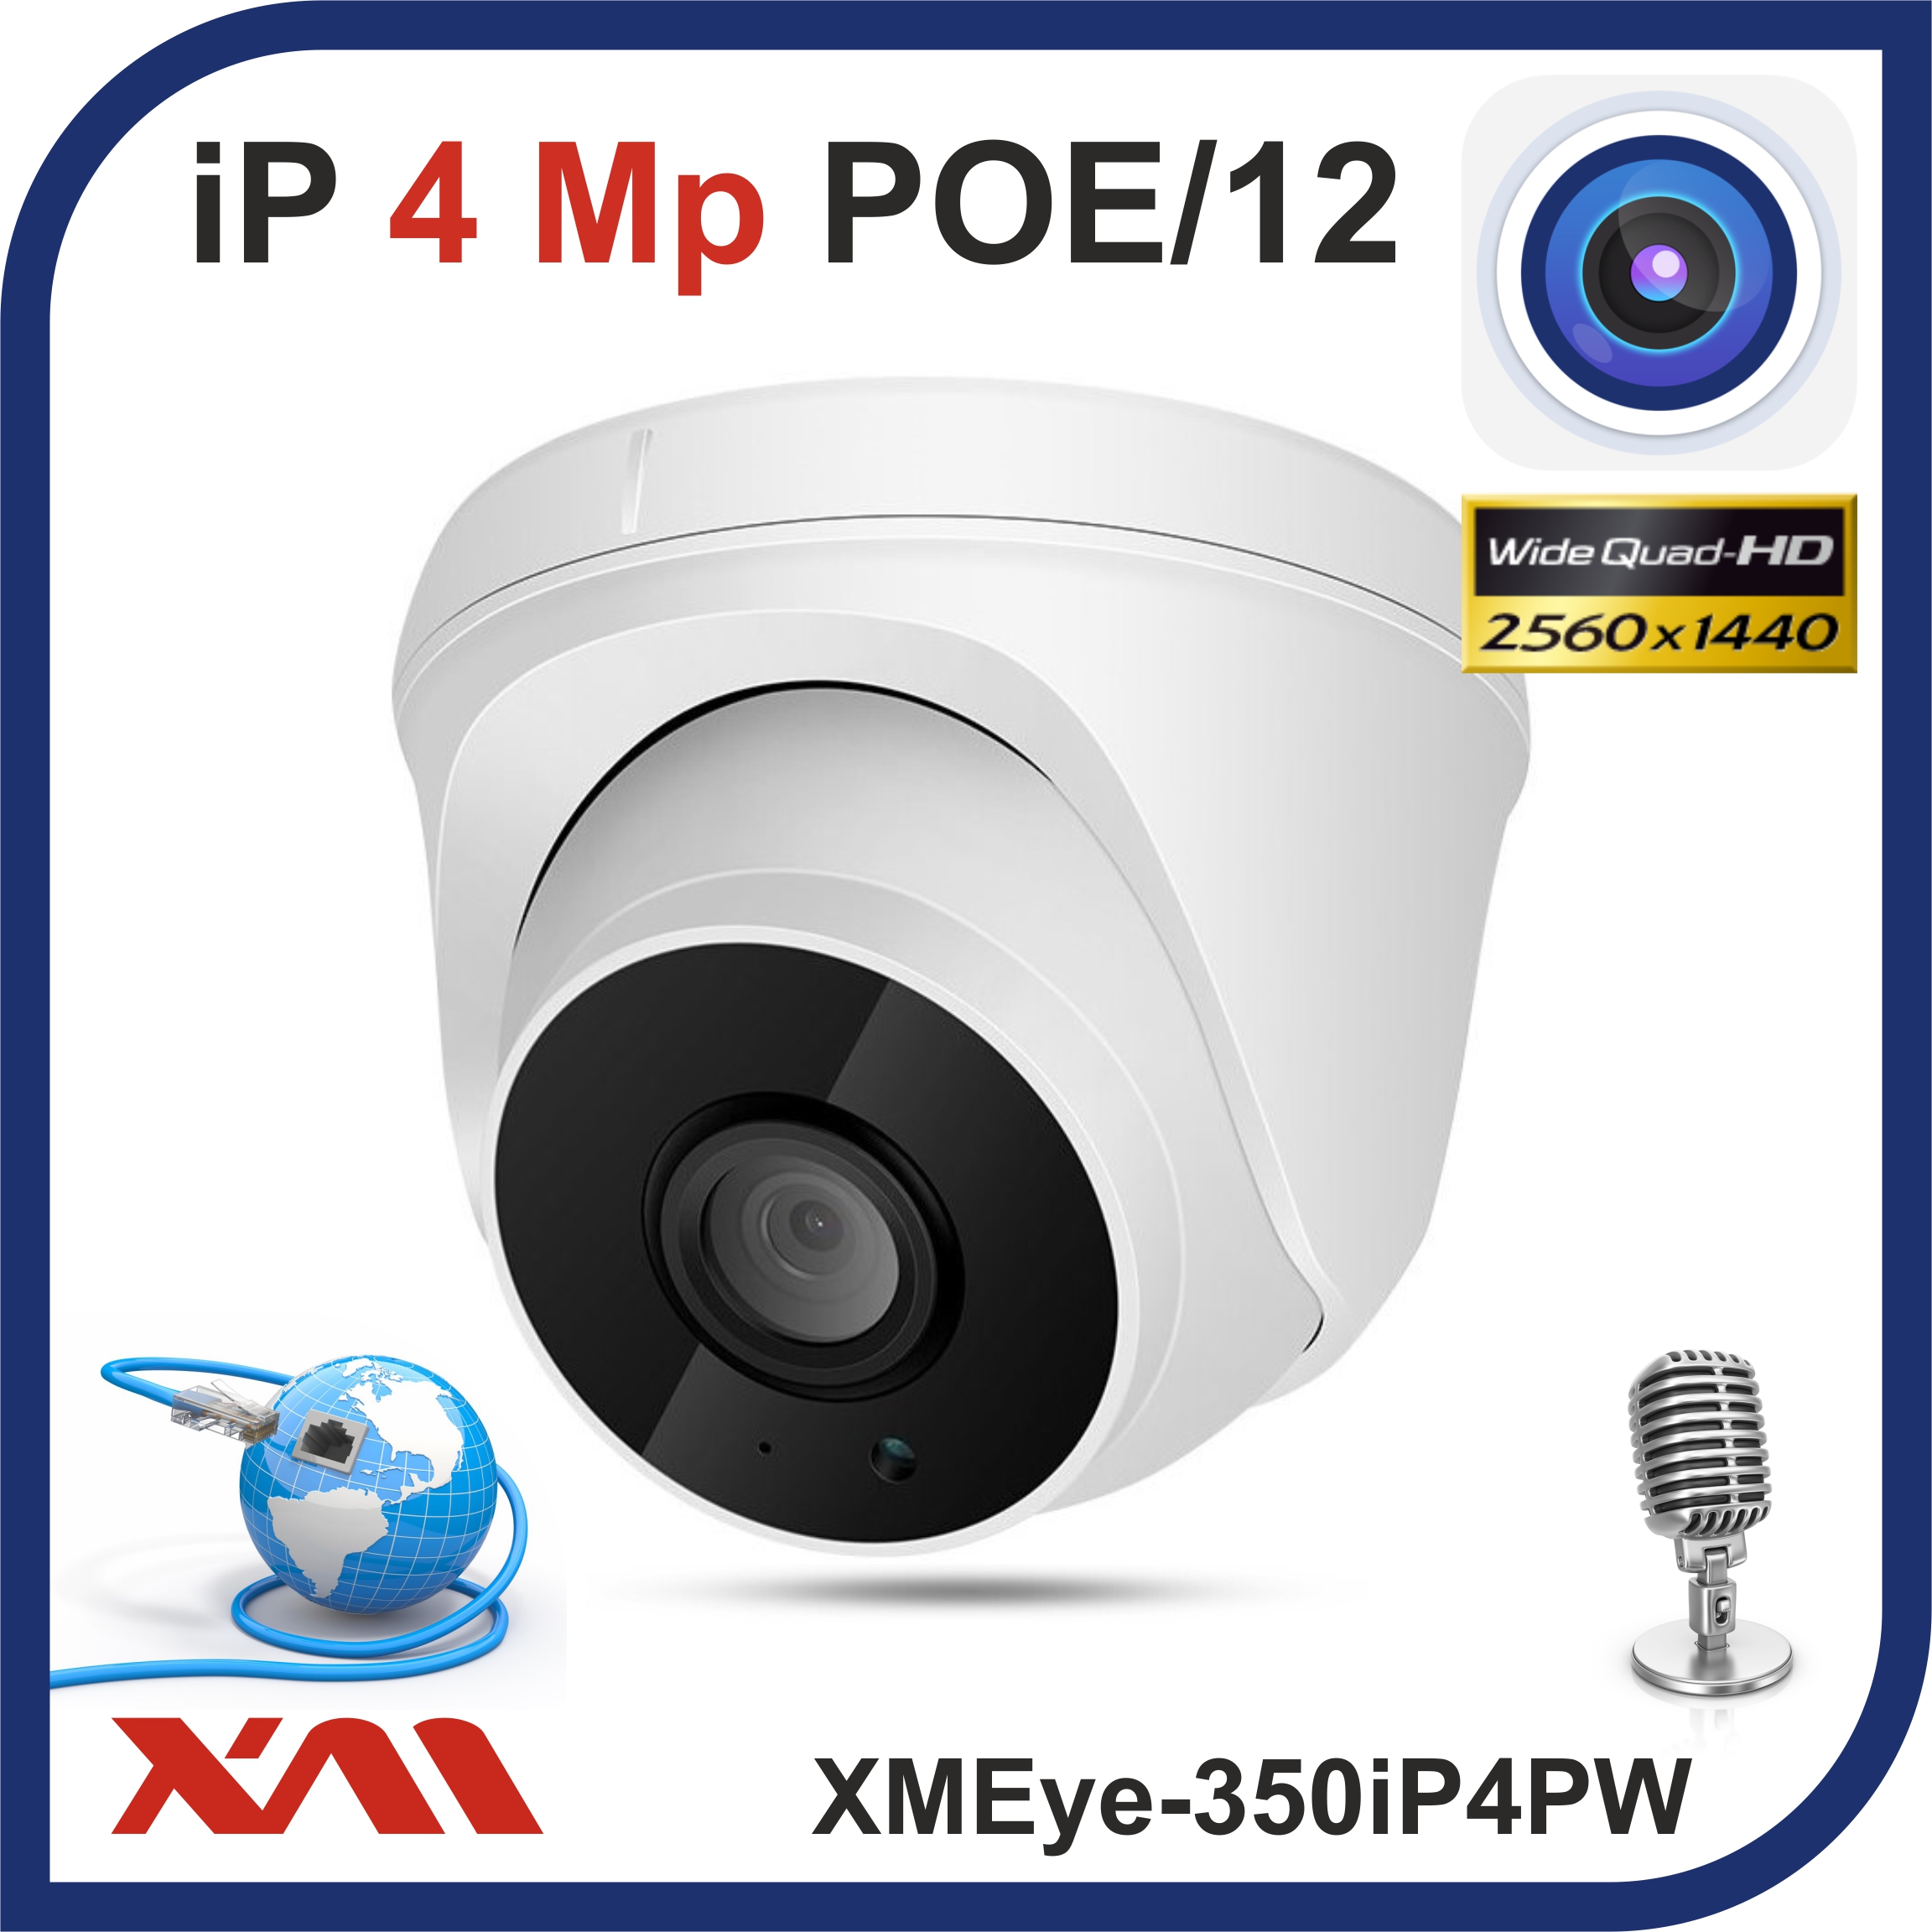 Камера видеонаблюдения XMEye 350iP4PW-2.8 купольная с микрофоном IP, 4Mpx, 1440P, POE/12